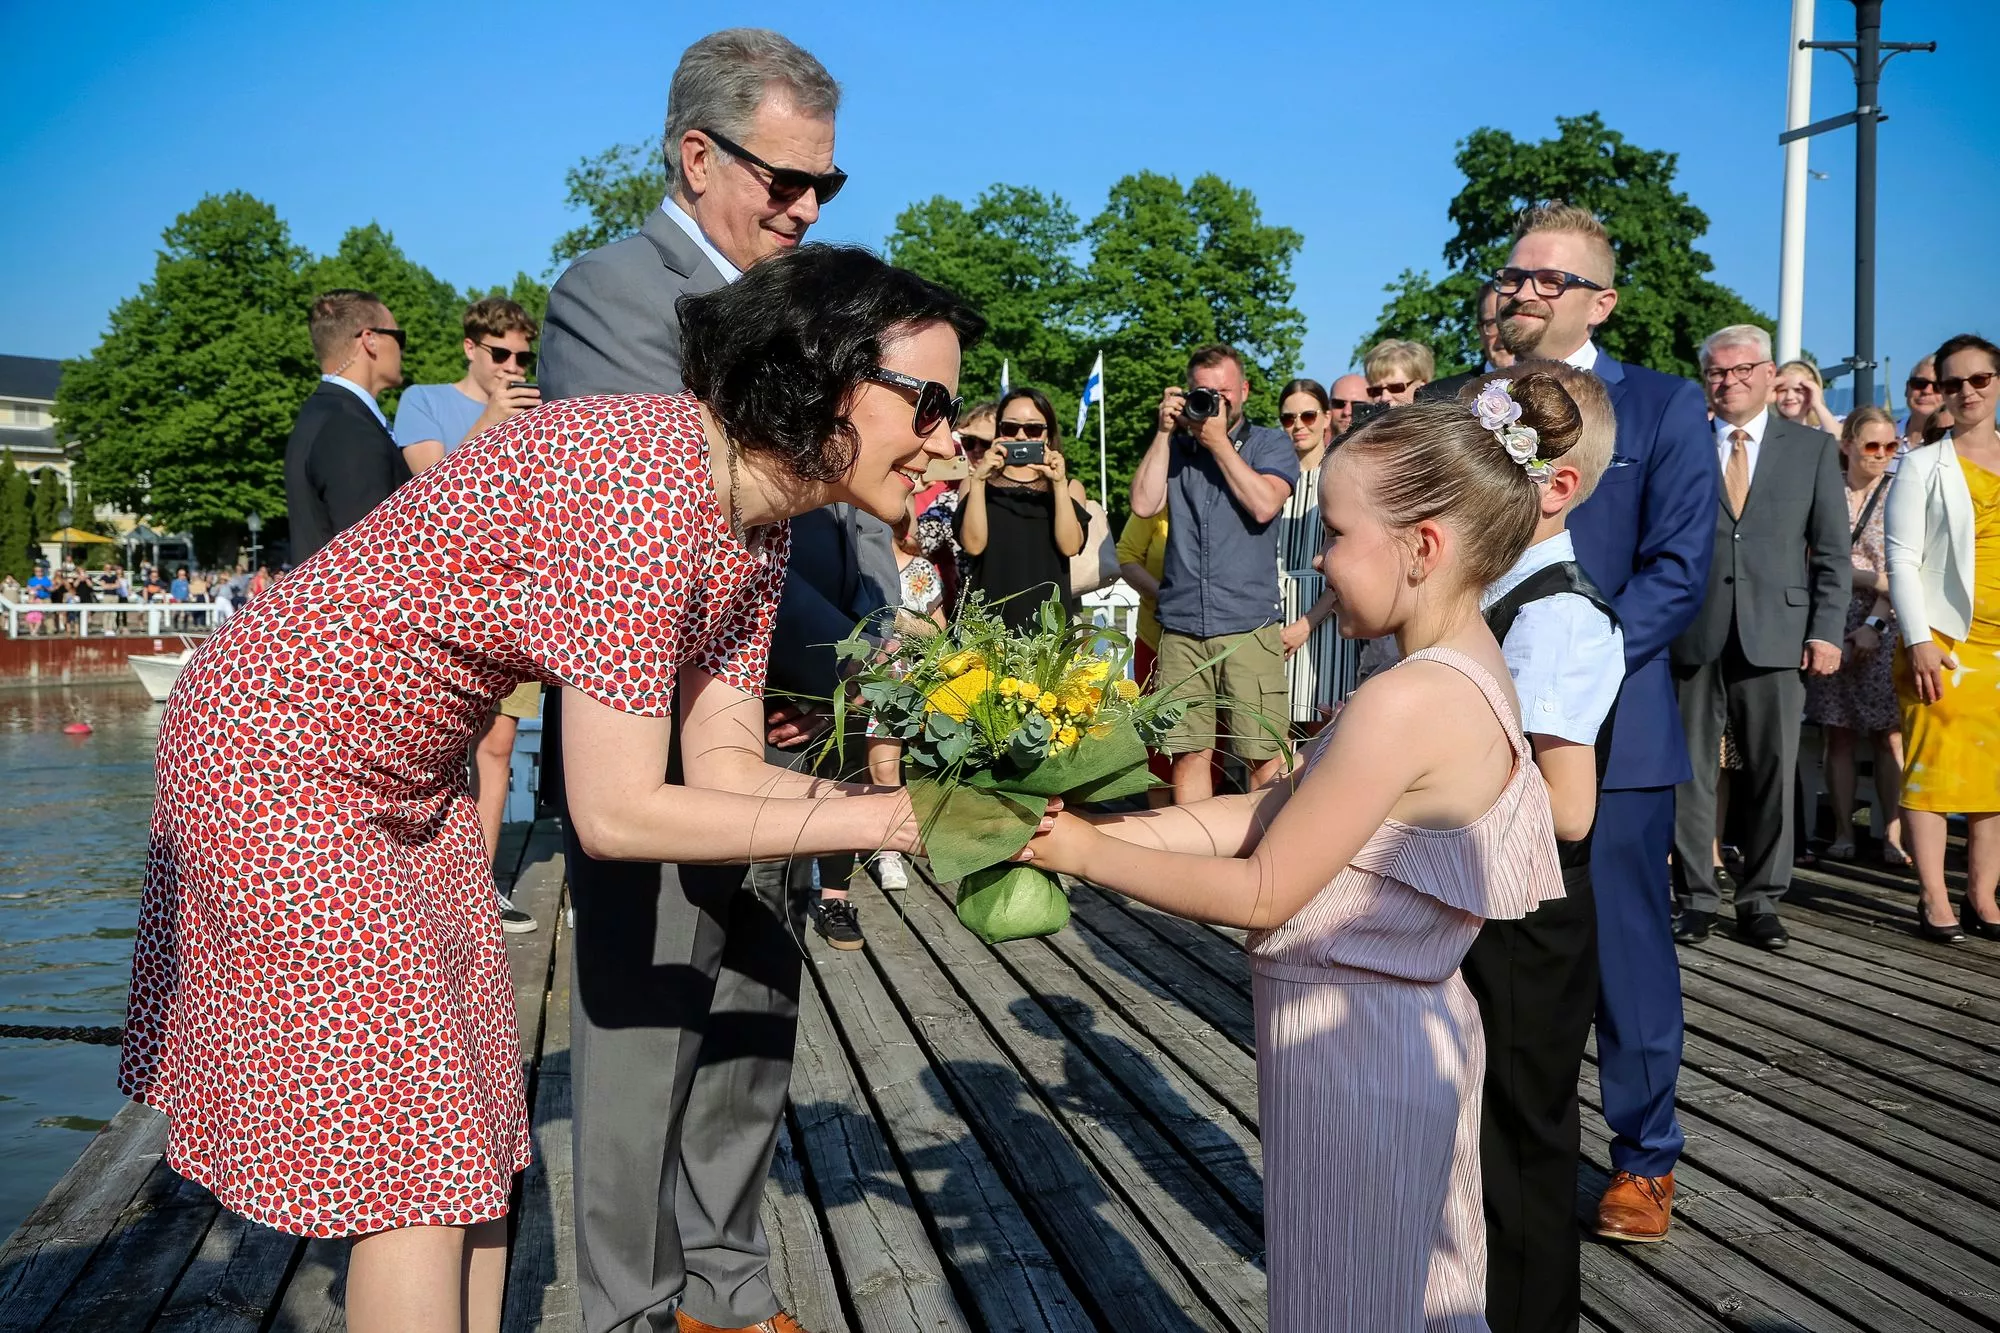 Merimaskun koulun oppilaat Lumi Mäki ja Jeremias Randell ojensivat kukkia Jenni Haukiolle presidenttiparin saapuessa Naantalin Kultarantaan kesällä 2019.